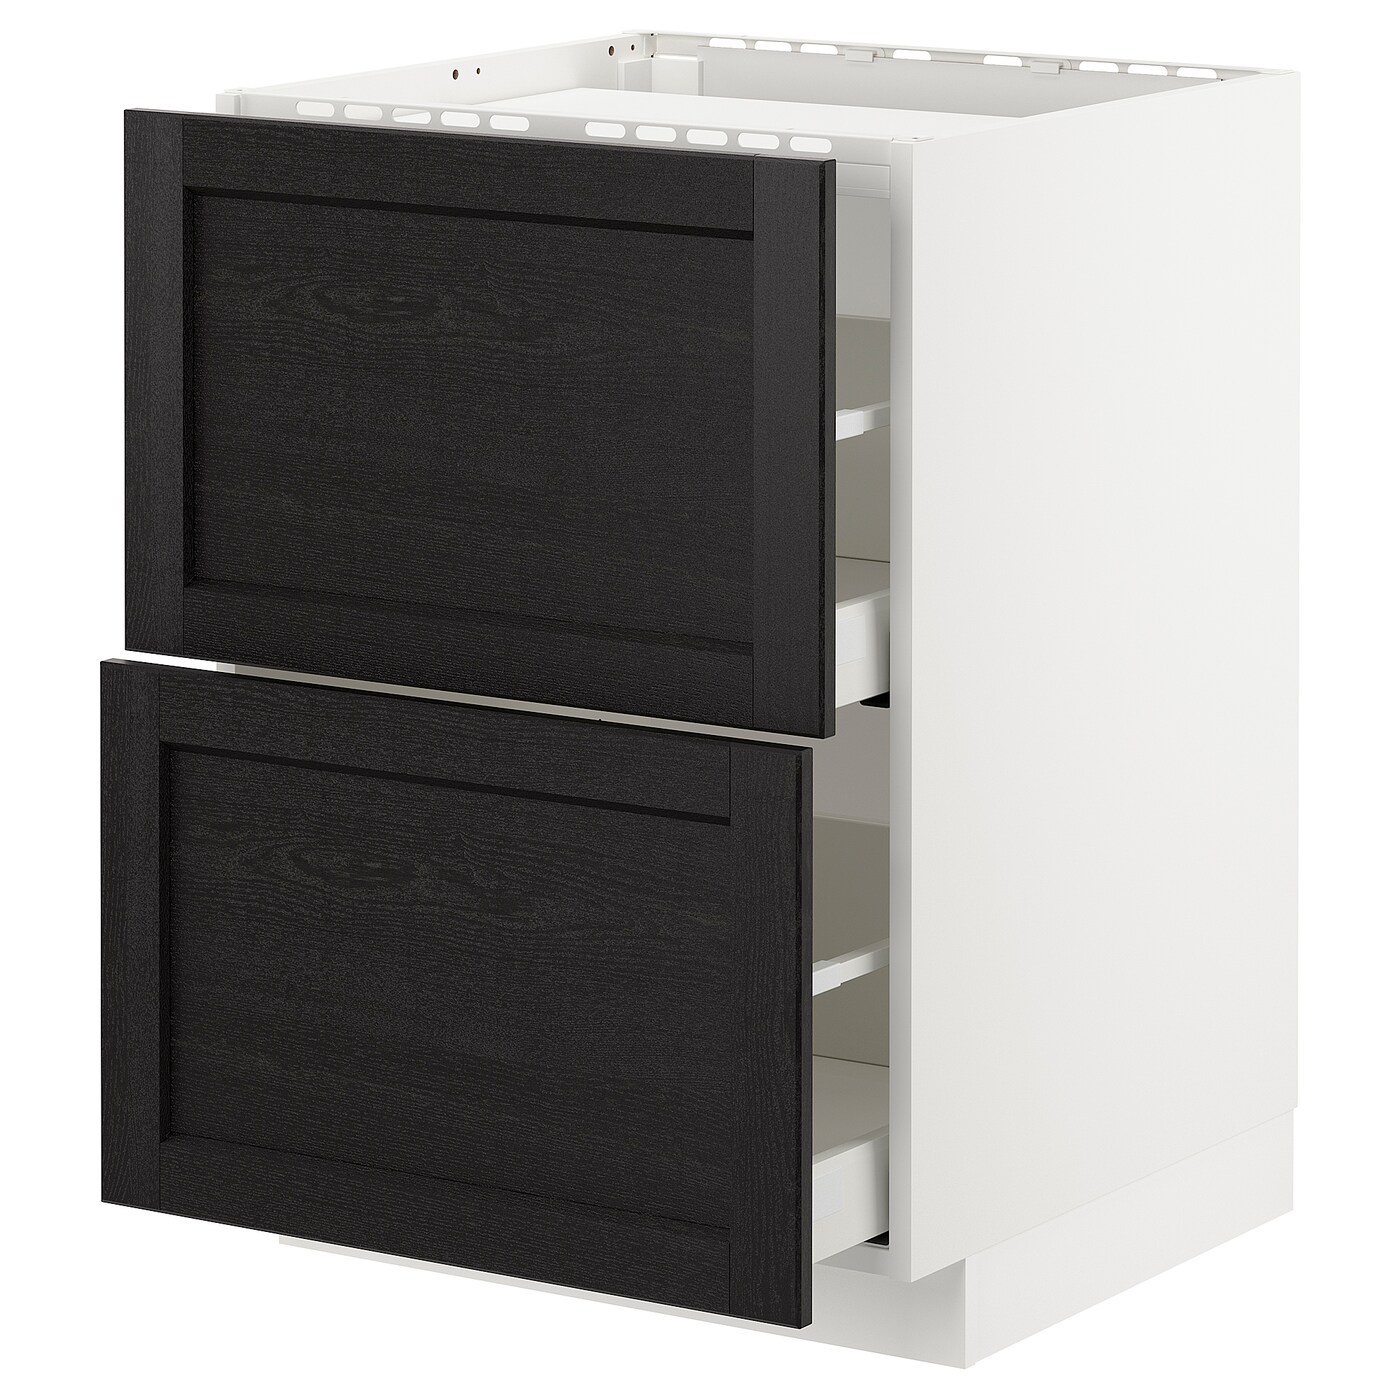 Напольный кухонный шкаф  - IKEA METOD MAXIMERA, 88x61,8x60см, белый/черный, МЕТОД МАКСИМЕРА ИКЕА